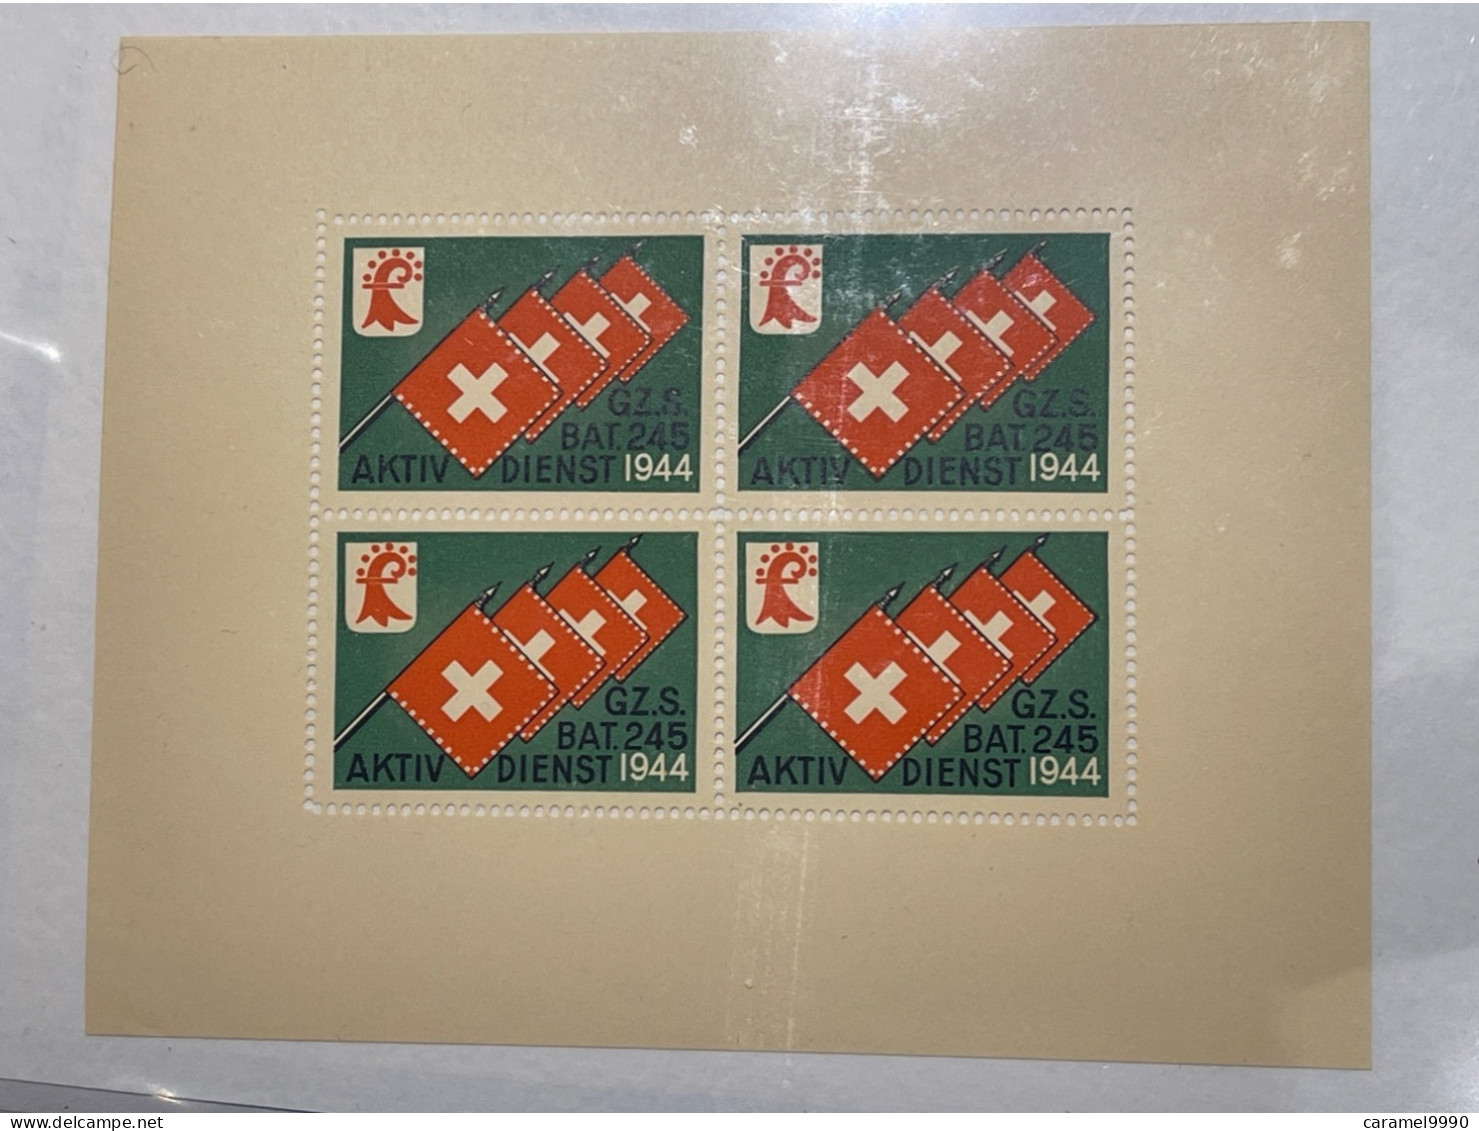 Schweiz Swiss Soldatenmarken 1944 Aktivdienst Grenzdienst GZ. S. BAT. 245  Z 27 - Labels